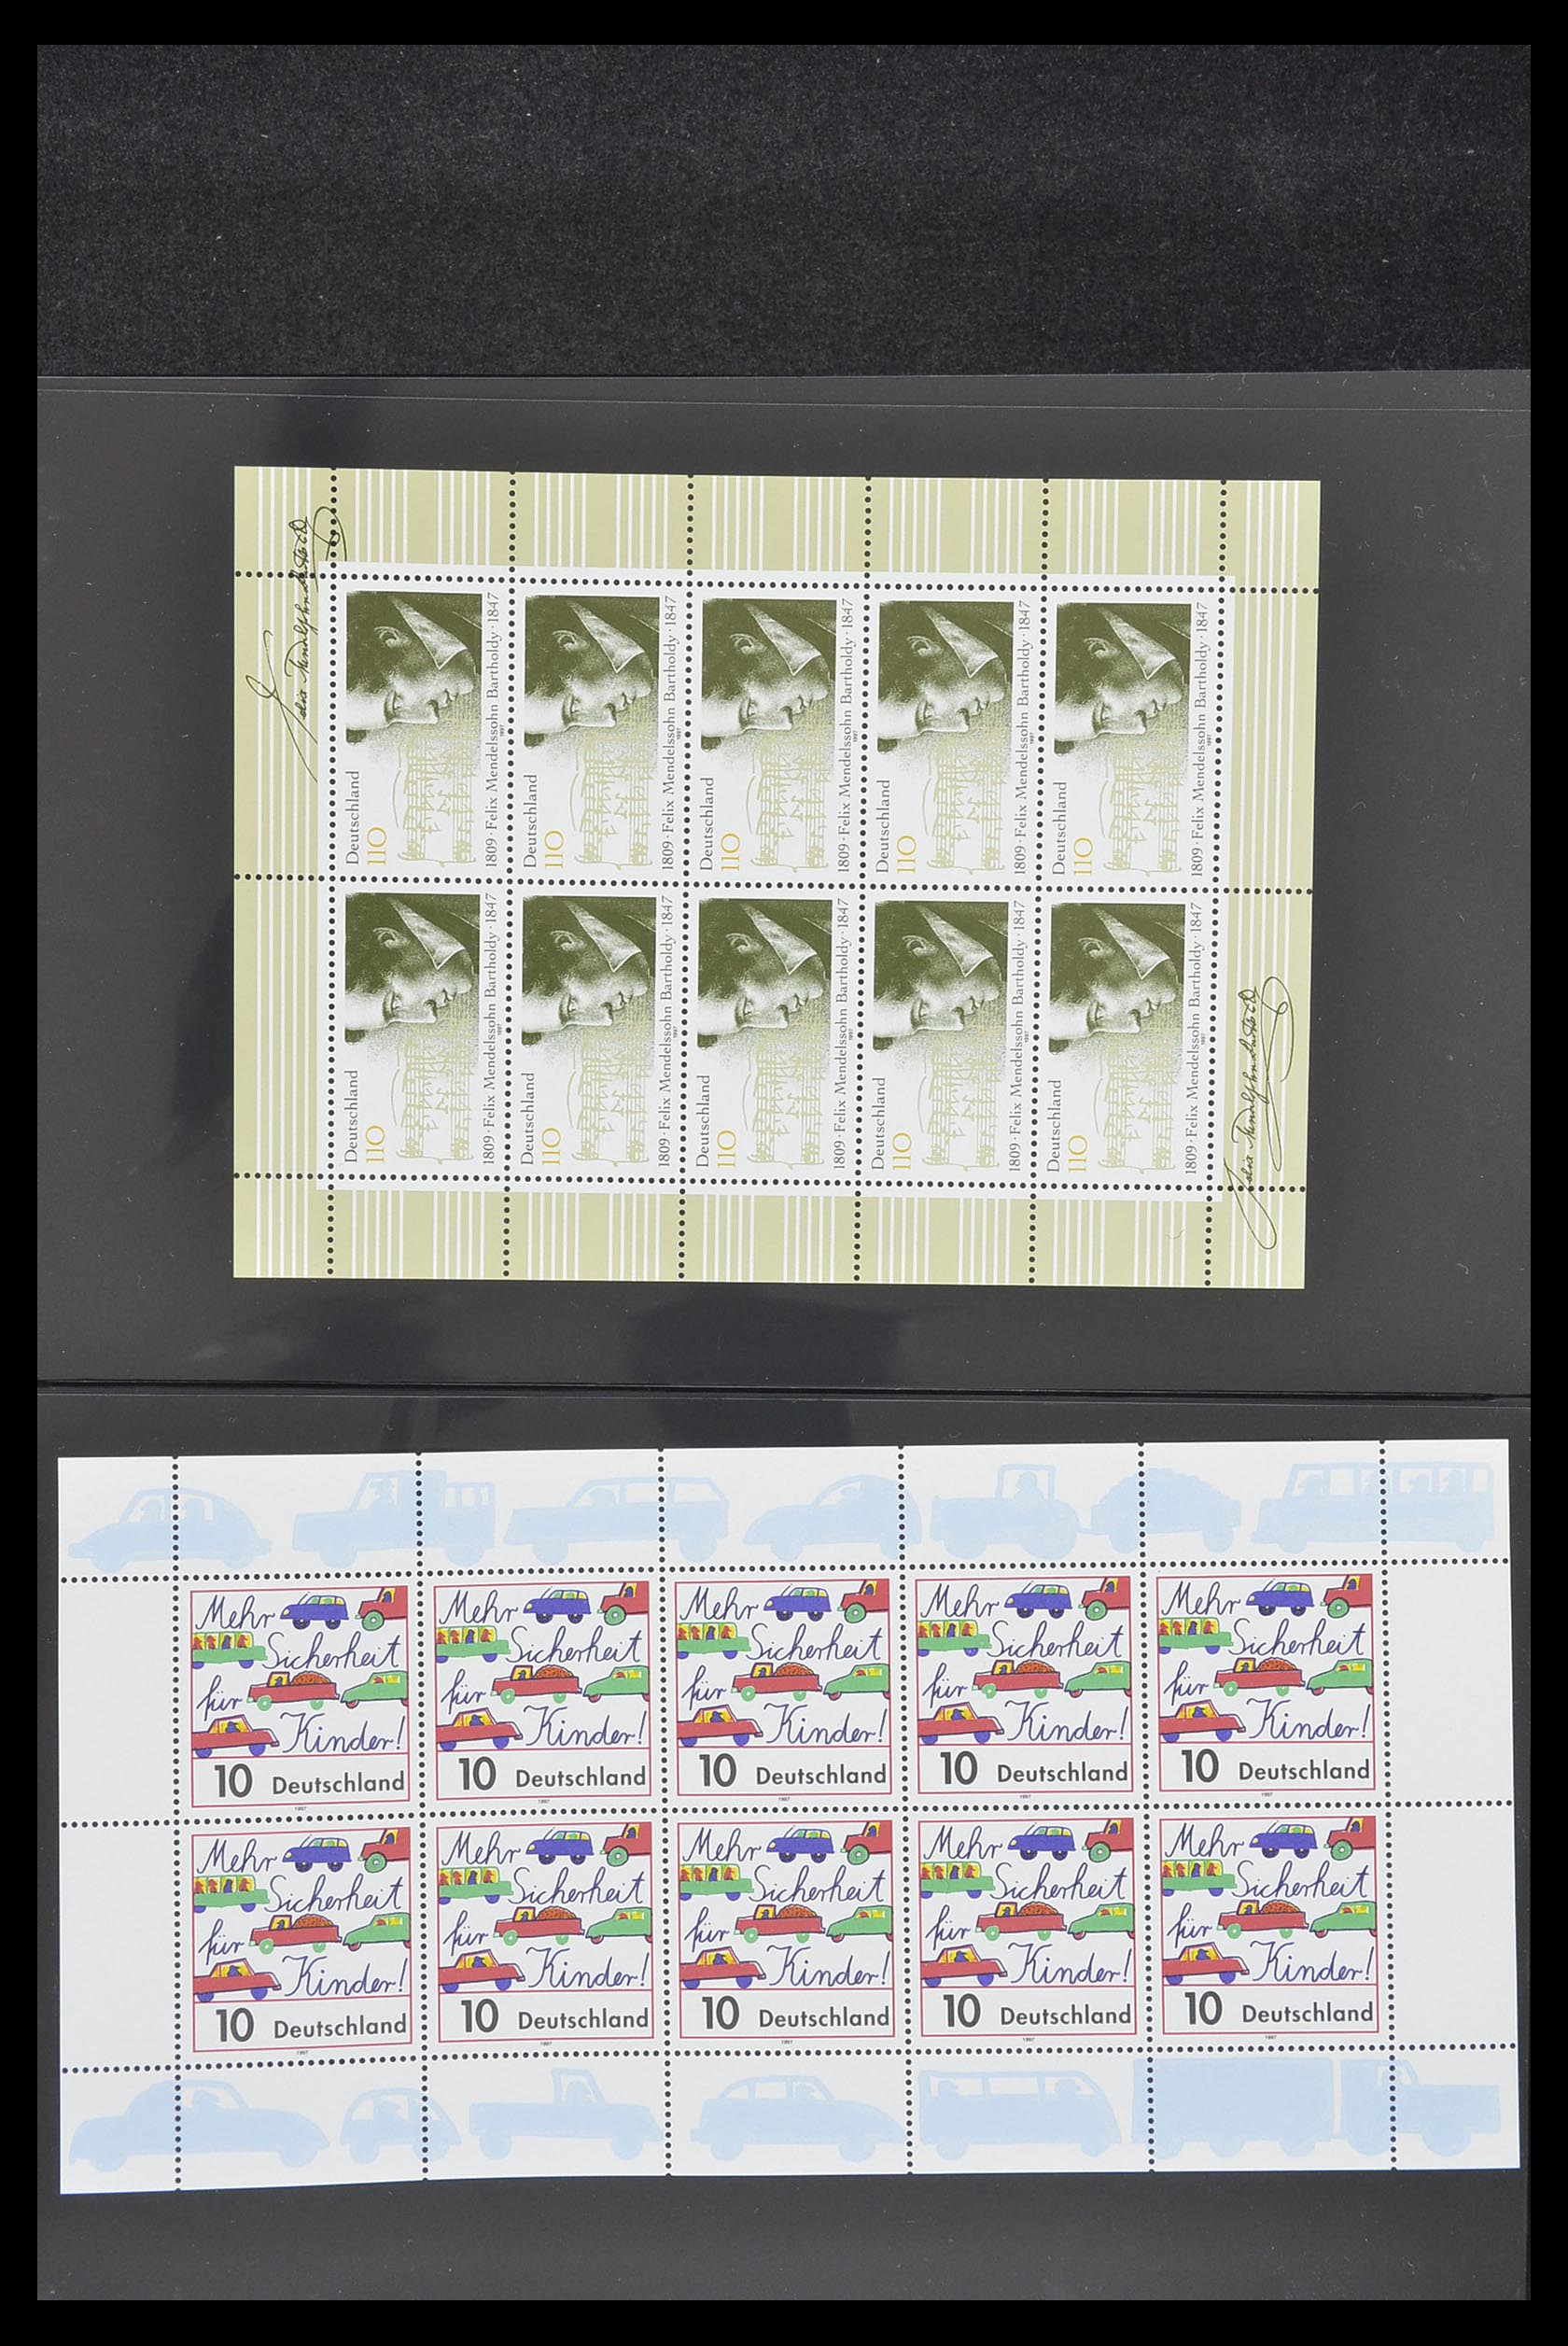 33936 088 - Stamp collection 33936 Bundespost kleinbogen 1994-2000.